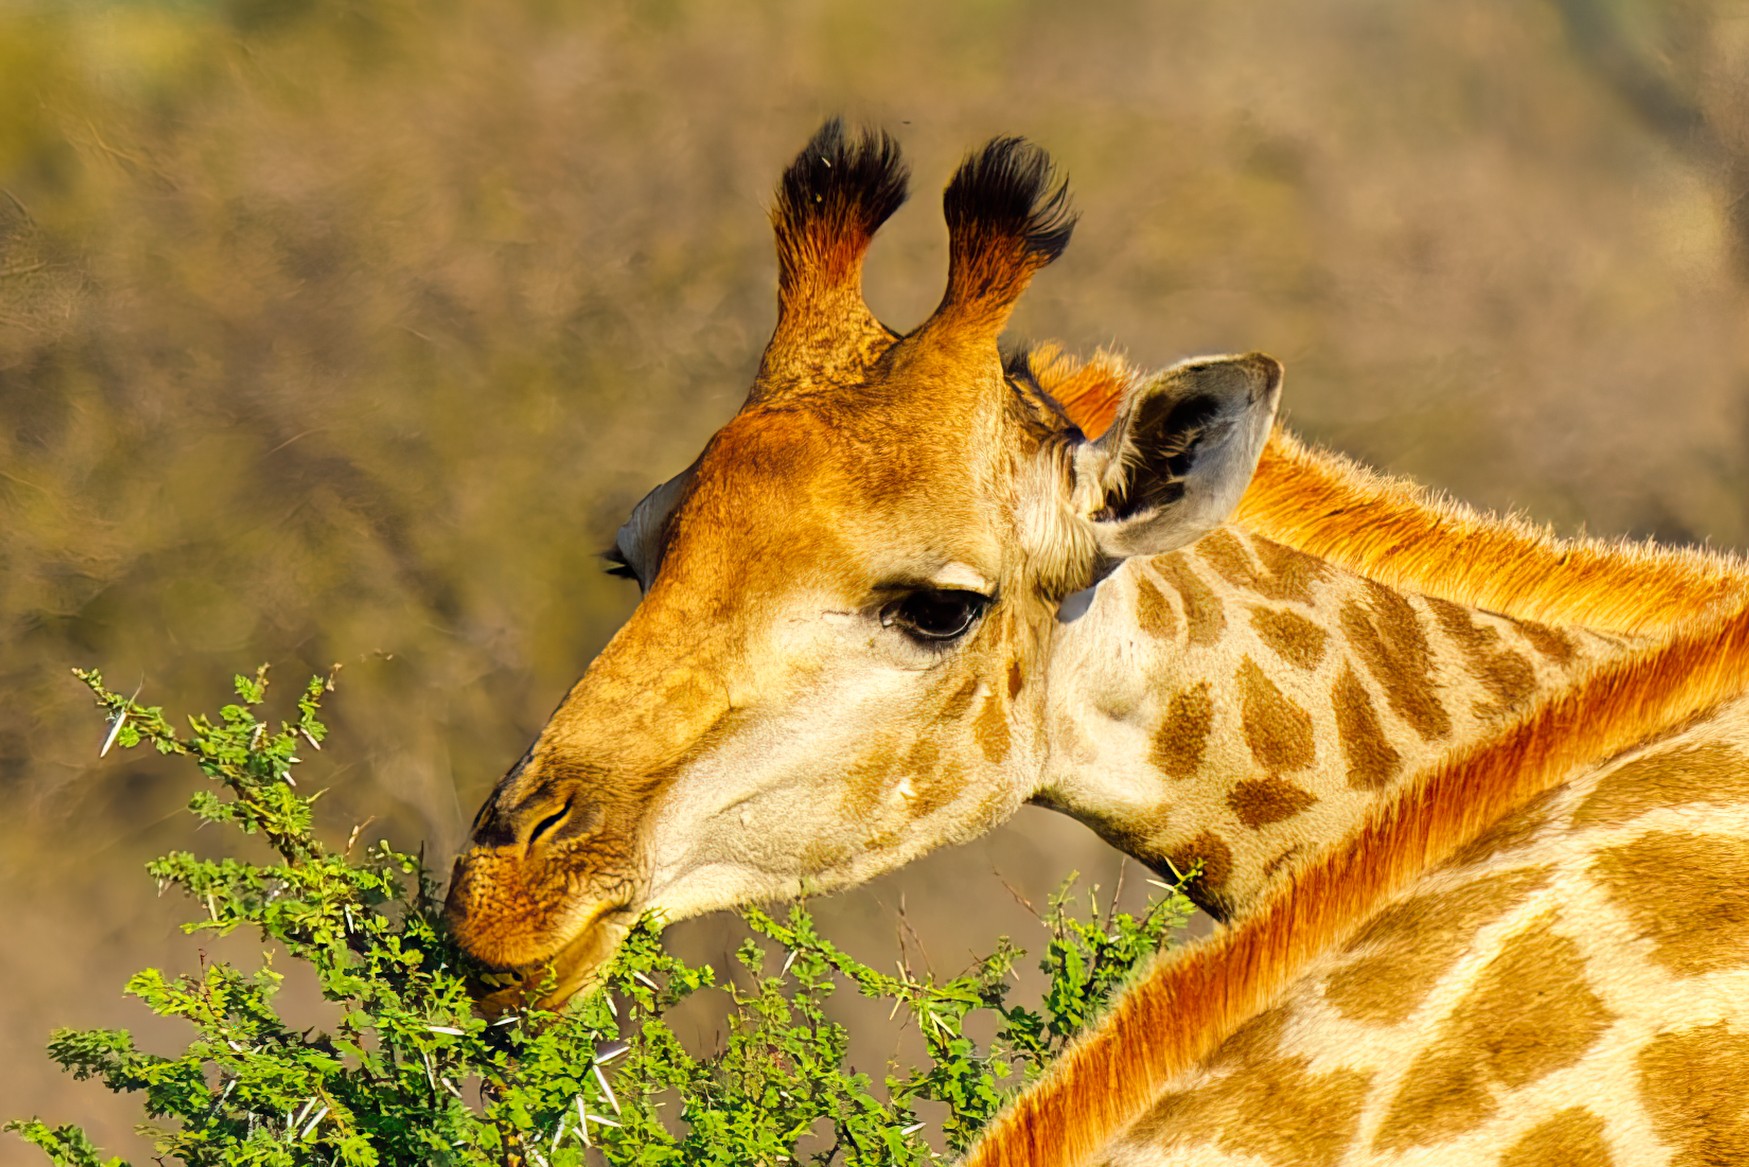 Beautiful Giraffe Face.jpg